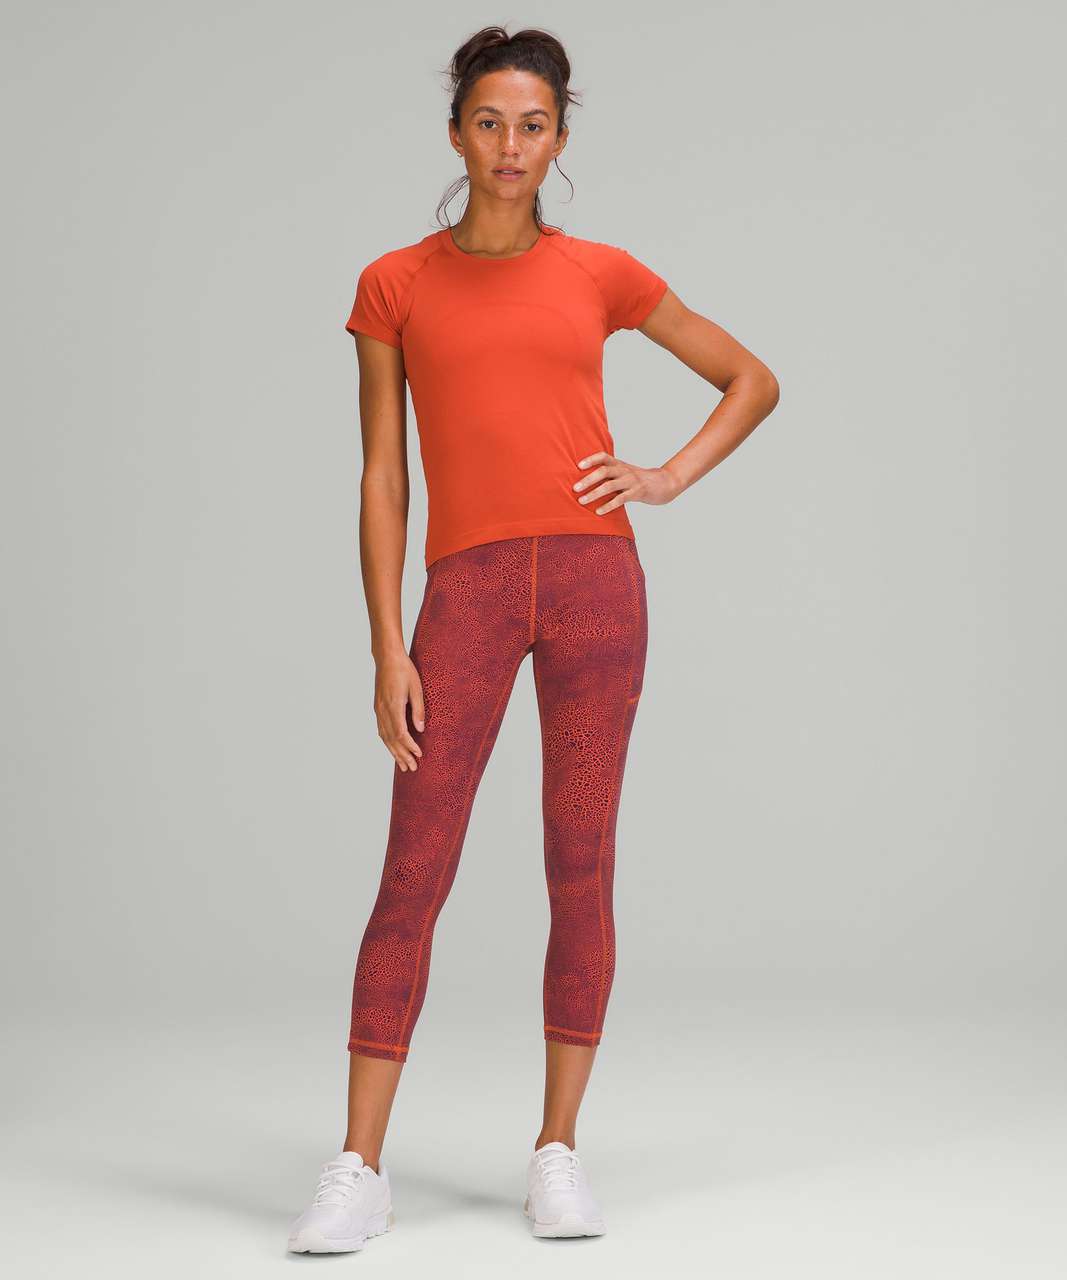 Lululemon Swiftly Tech Short Sleeve Shirt 2.0 *Race Length - Canyon Orange / Canyon Orange